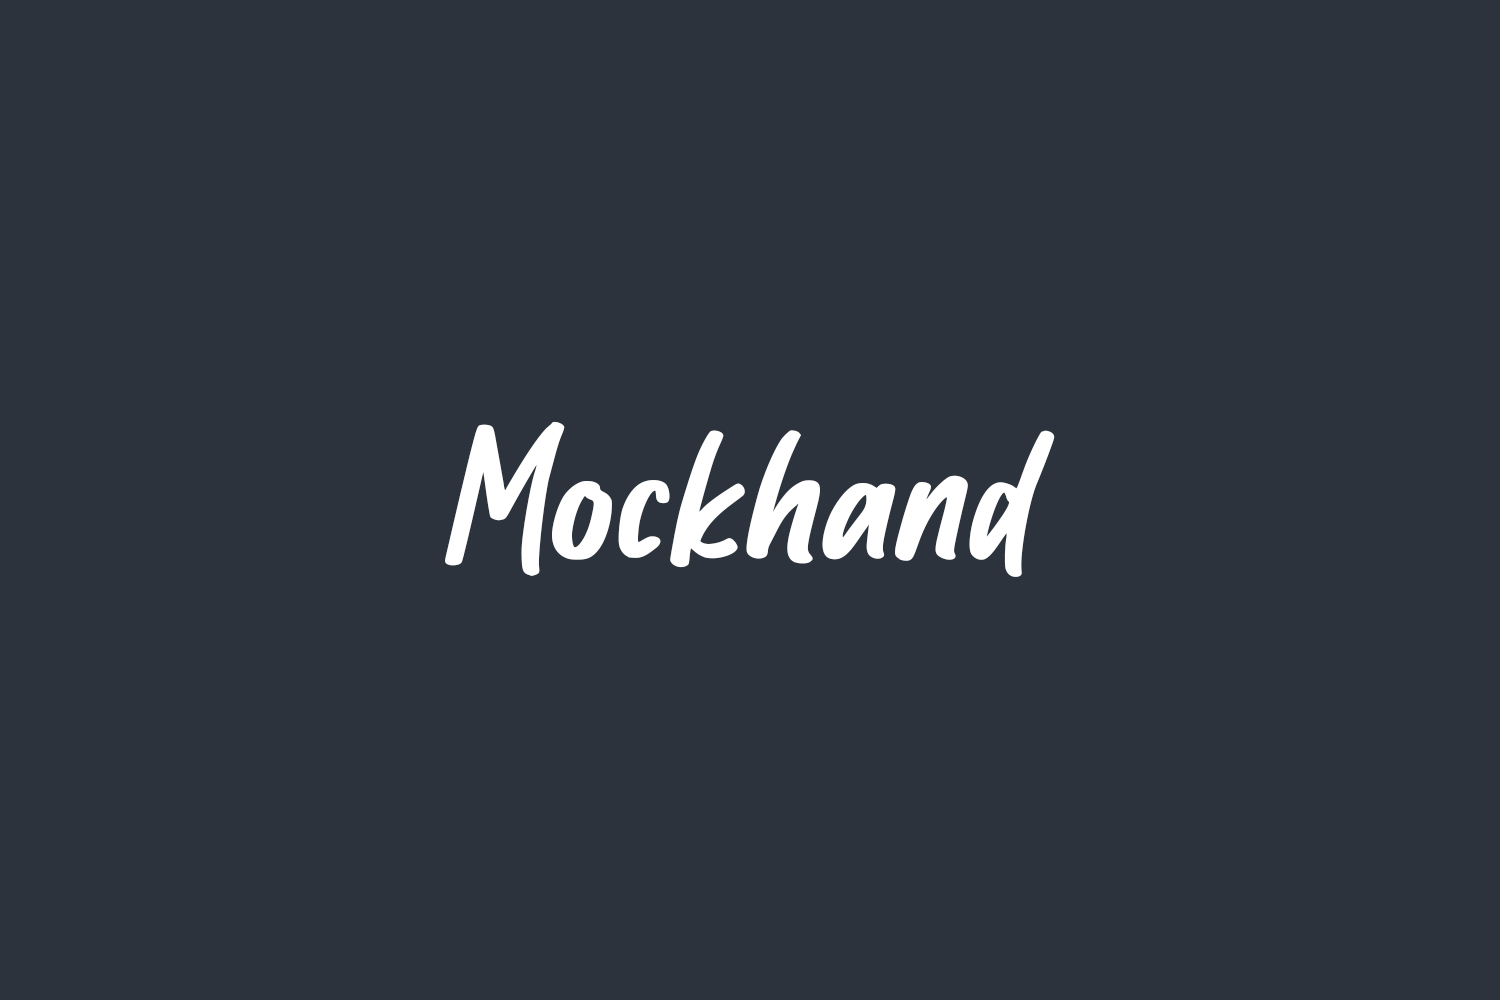 Mockhand Free Font